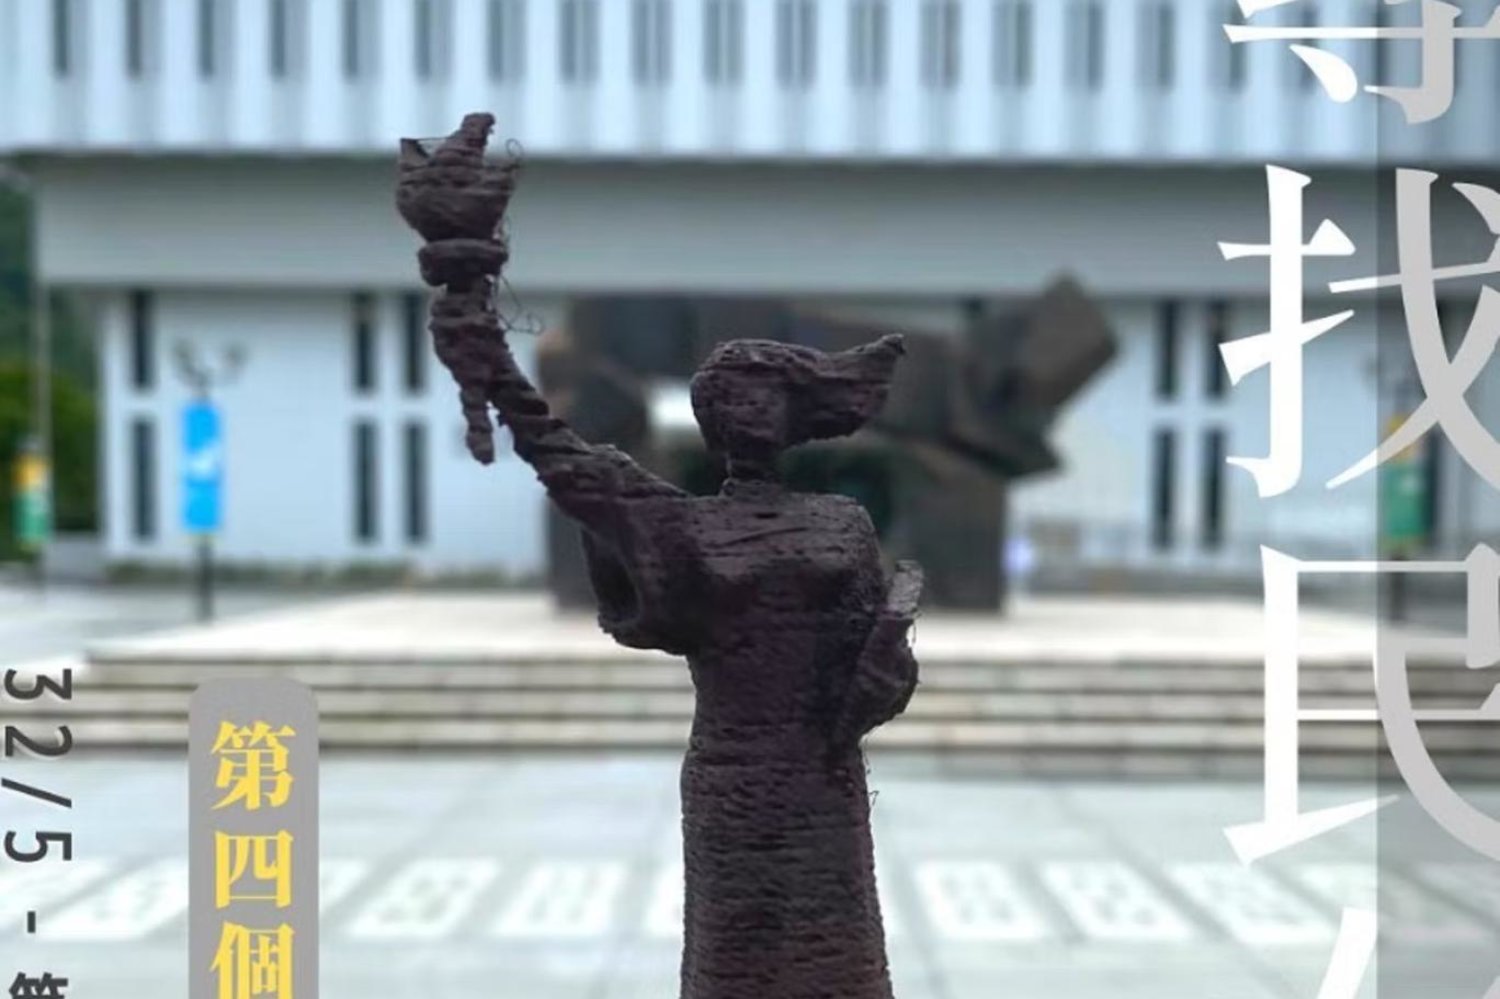 1989'da Tiananmen Meydanı'nda öğrencilerin taşıdığı demokrasi sembolünden esinlenilen orijinal heykelde "tanrıça" bir elinde yanan meşale, diğerindeyse kitap tutarken tasvir ediliyor (Instagram/Finding_manneoi)

